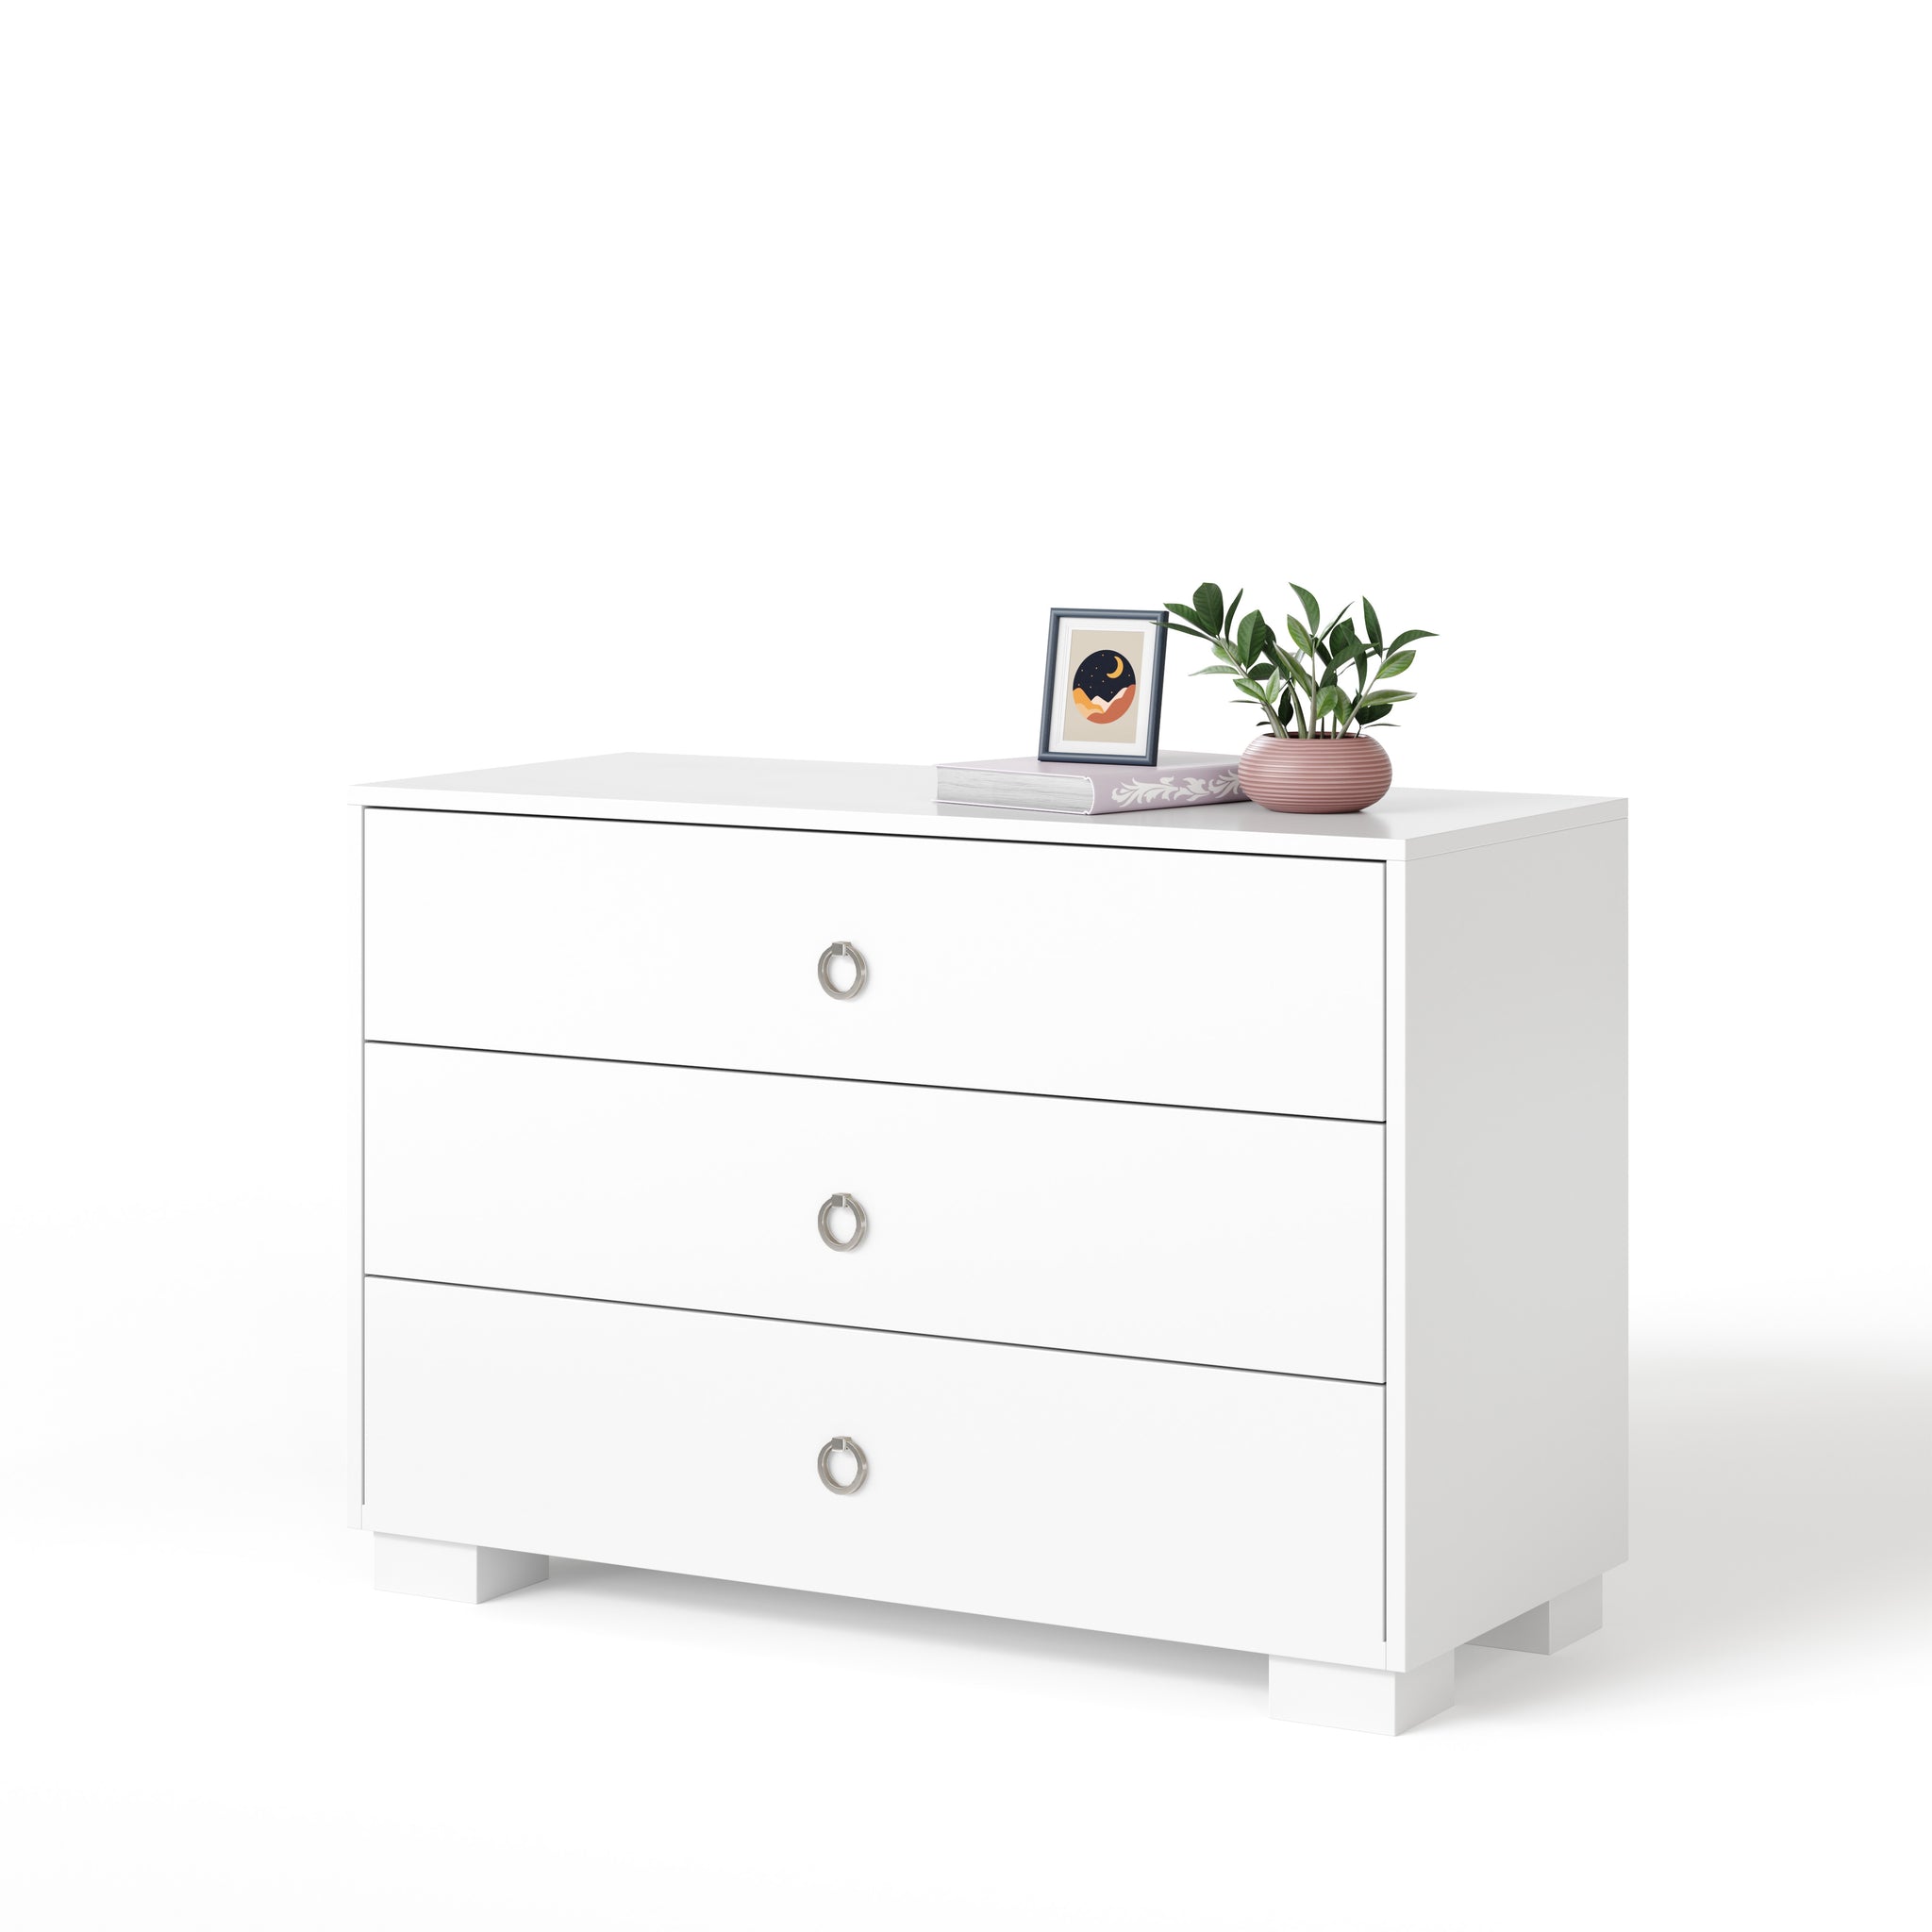 cabana 3-drawer dresser - white maple